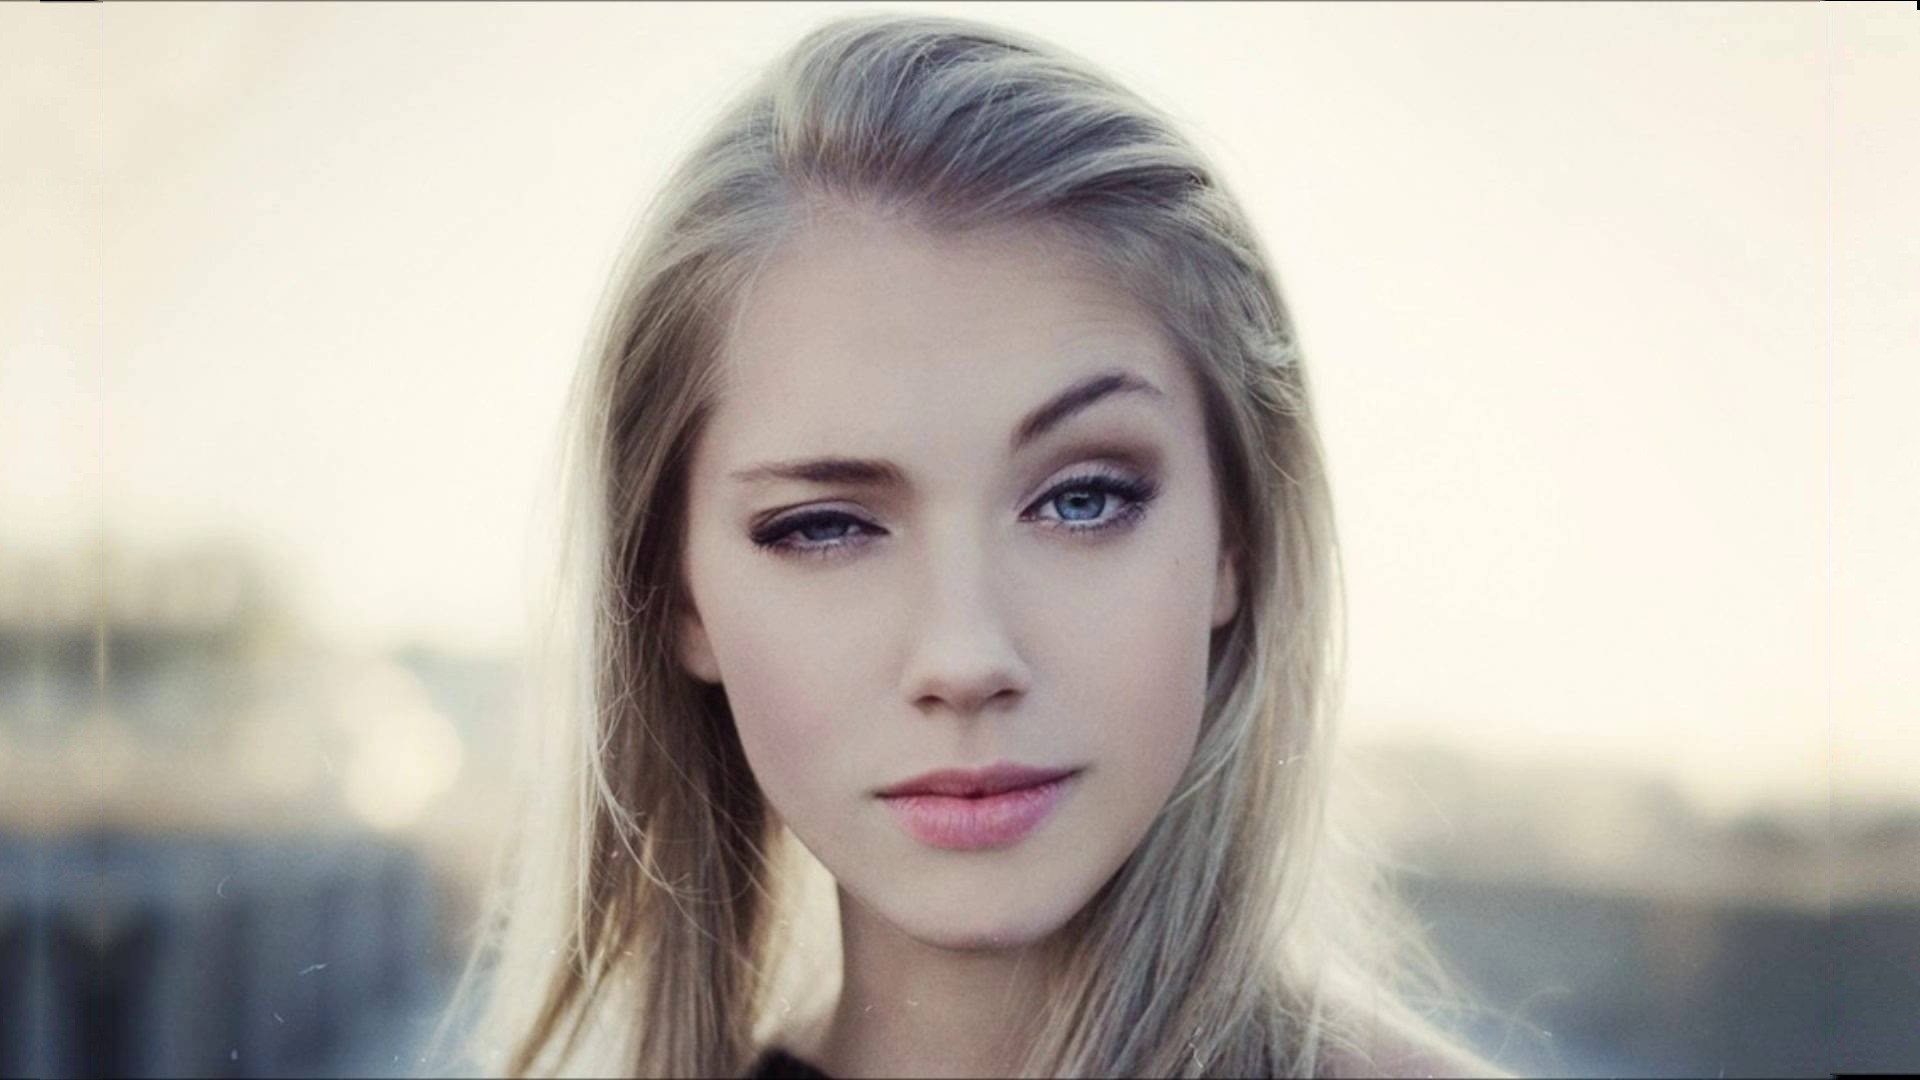 blonde women blue eyes lips blinky Wallpaper